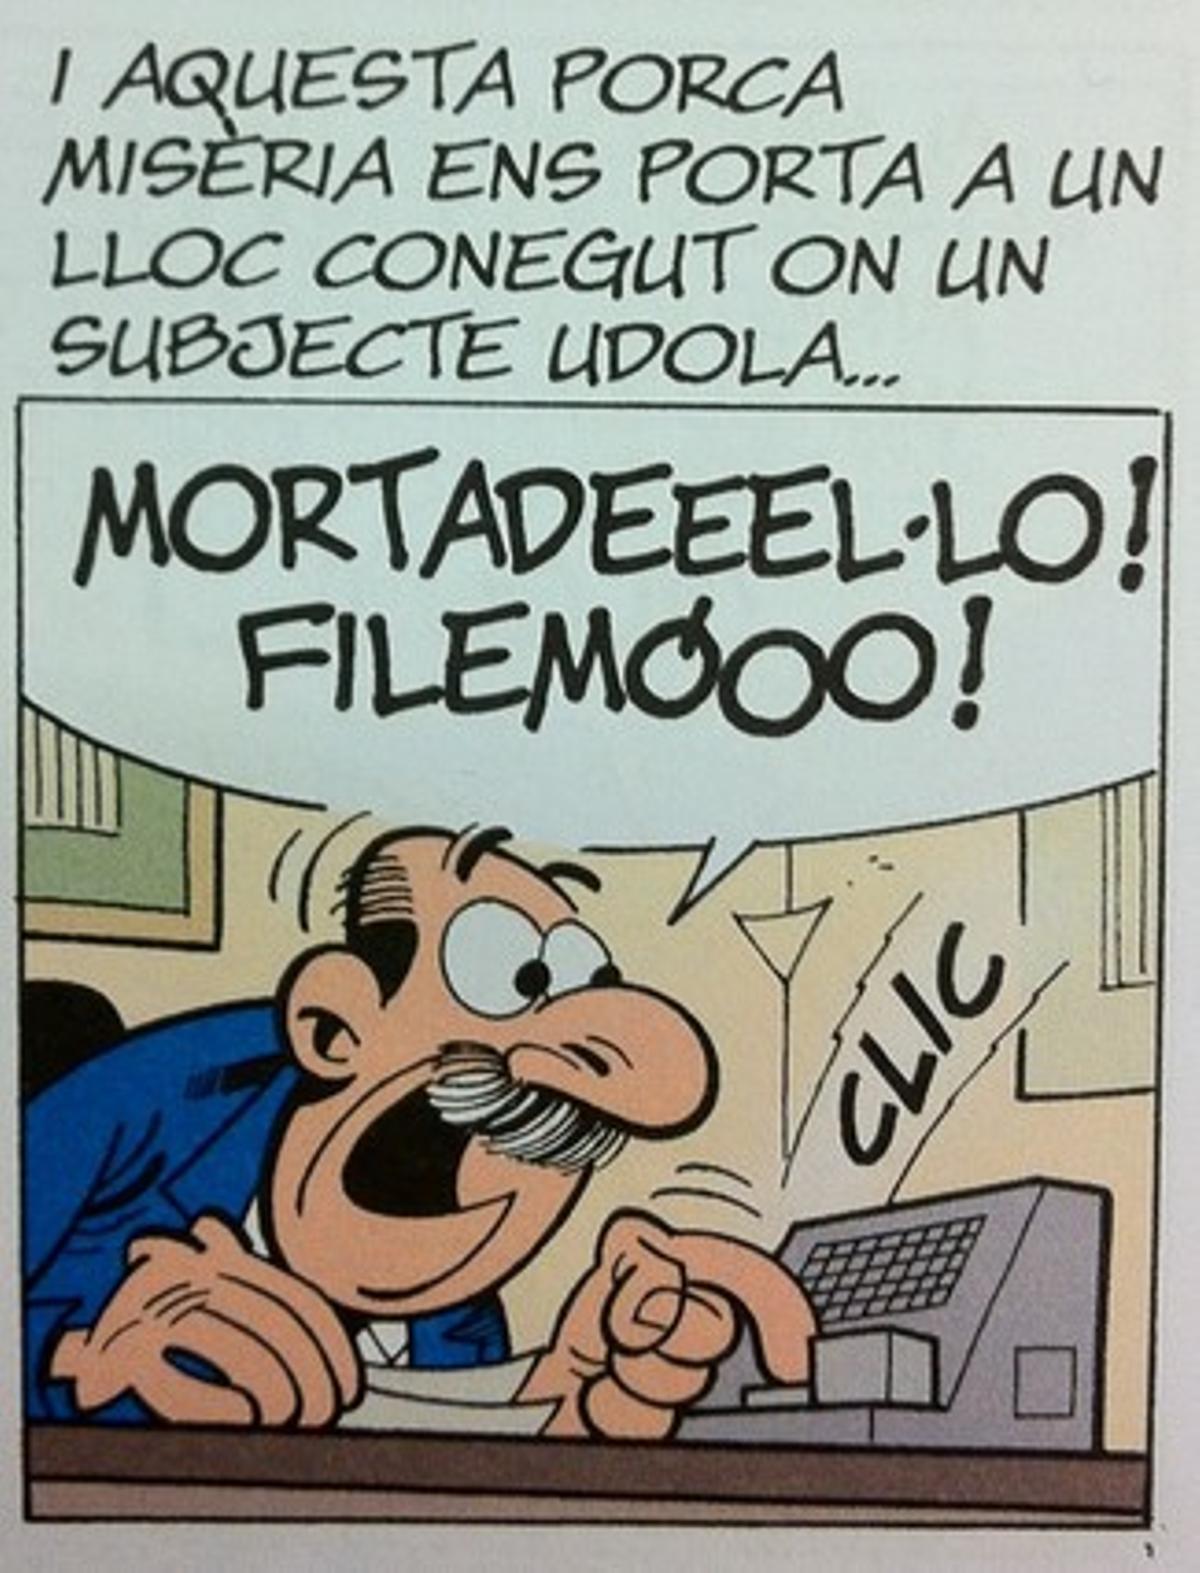 El Súper llama a Mortadel·lo y a Filemó en una viñeta del nuevo cómic.